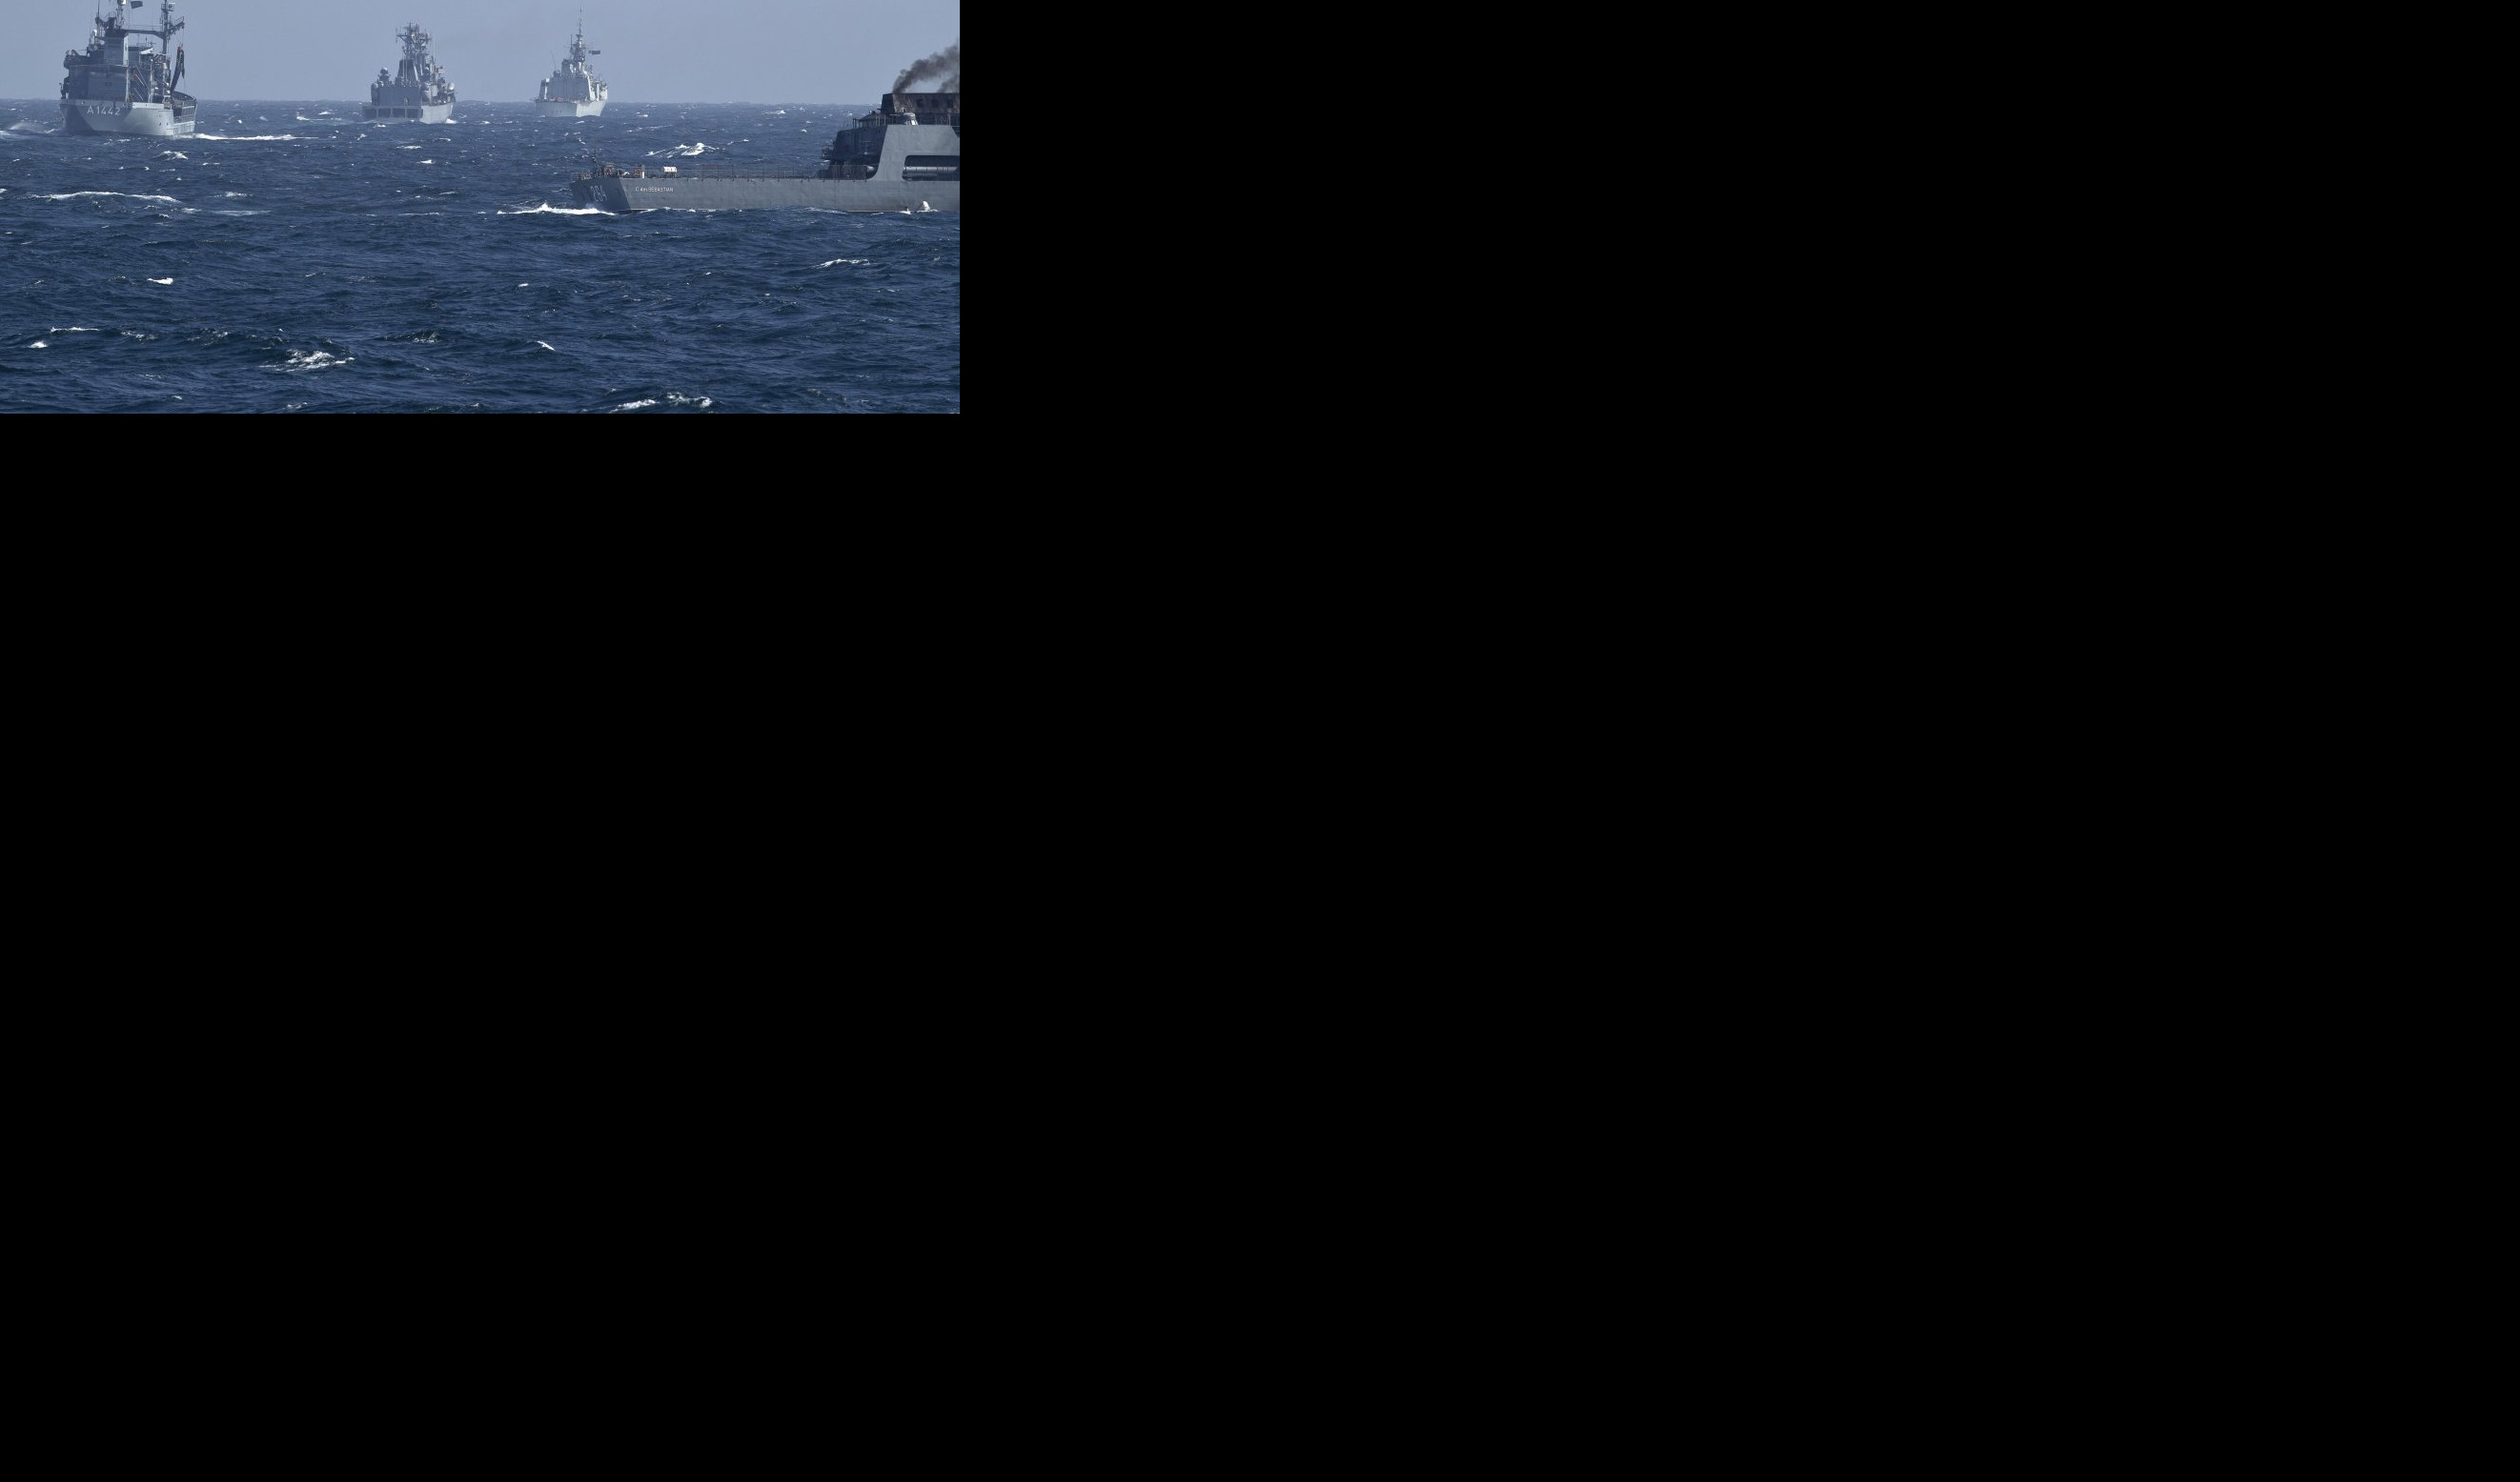 NAPETO KOD KRIMA! NATO brodovi u Crnom moru manevrišu pored gasnog nalazišta!